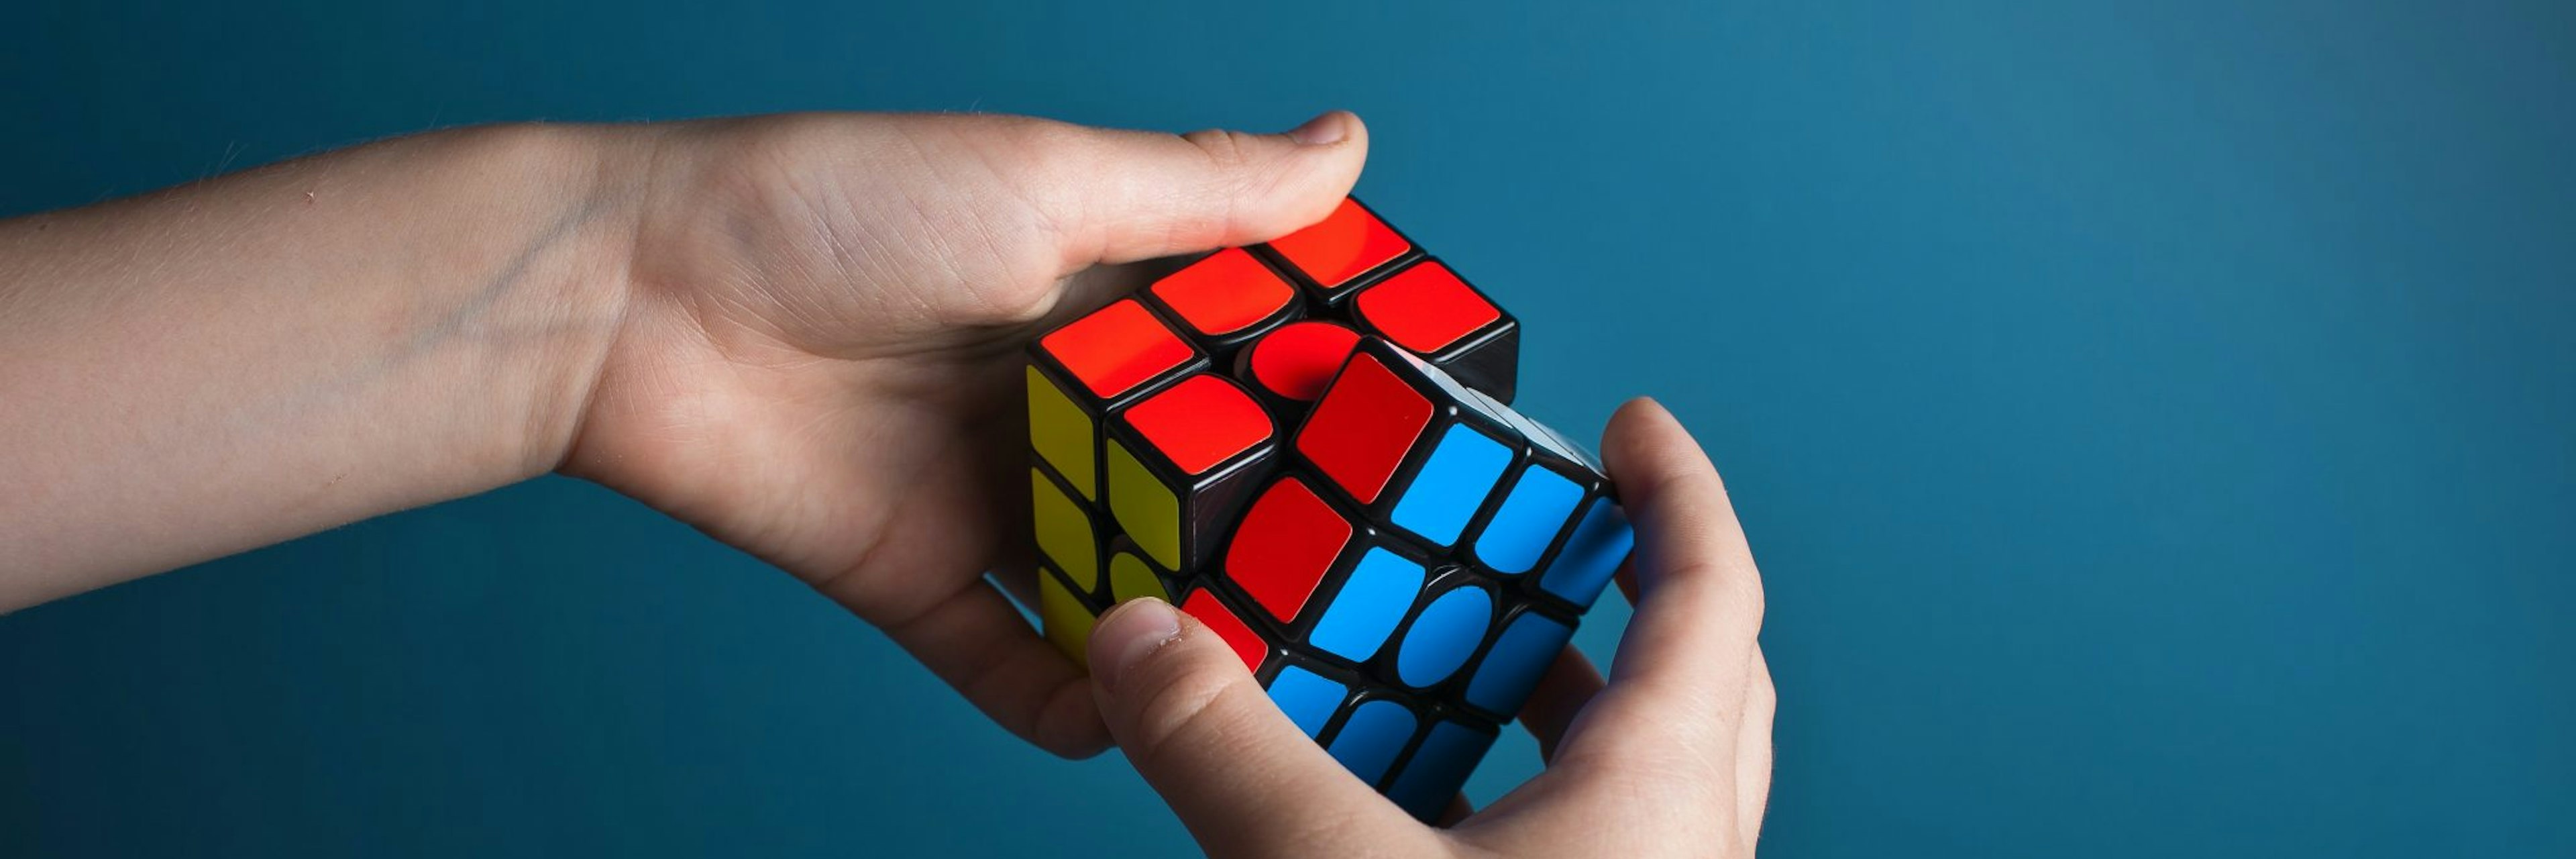 Hands doing a Rubik's cube